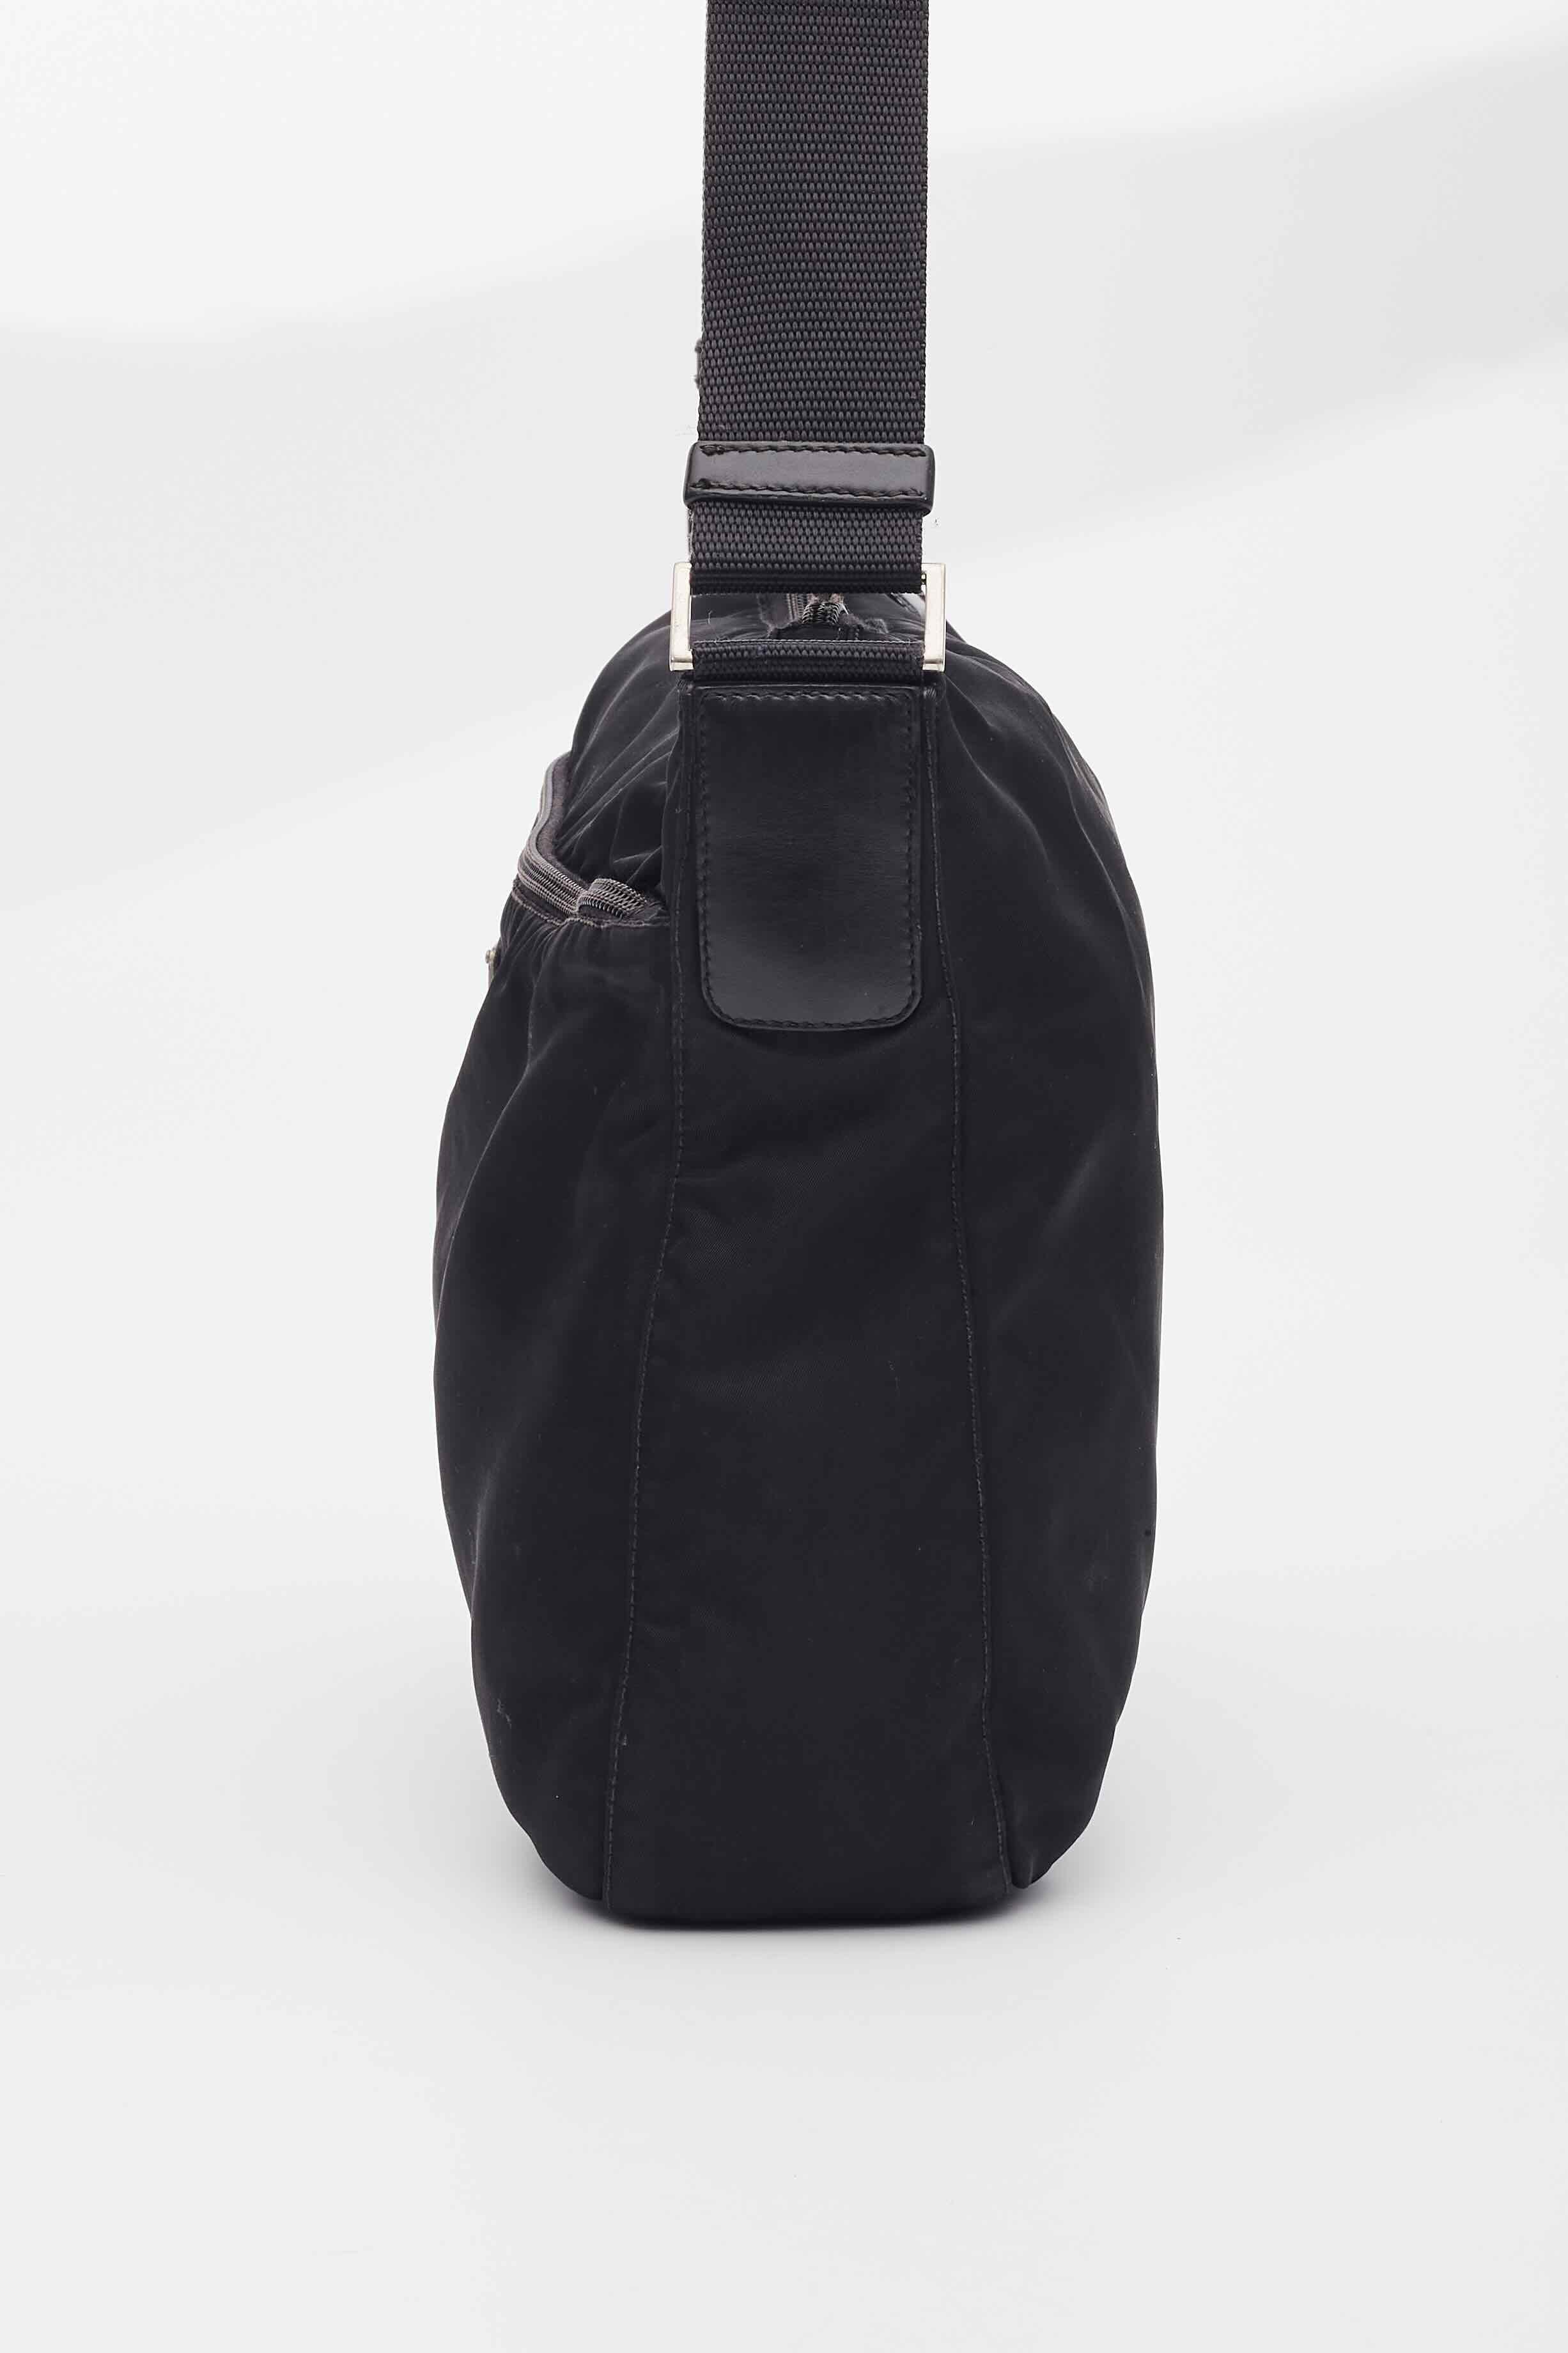 Prada Black Nylon Messenger Bag For Sale 1